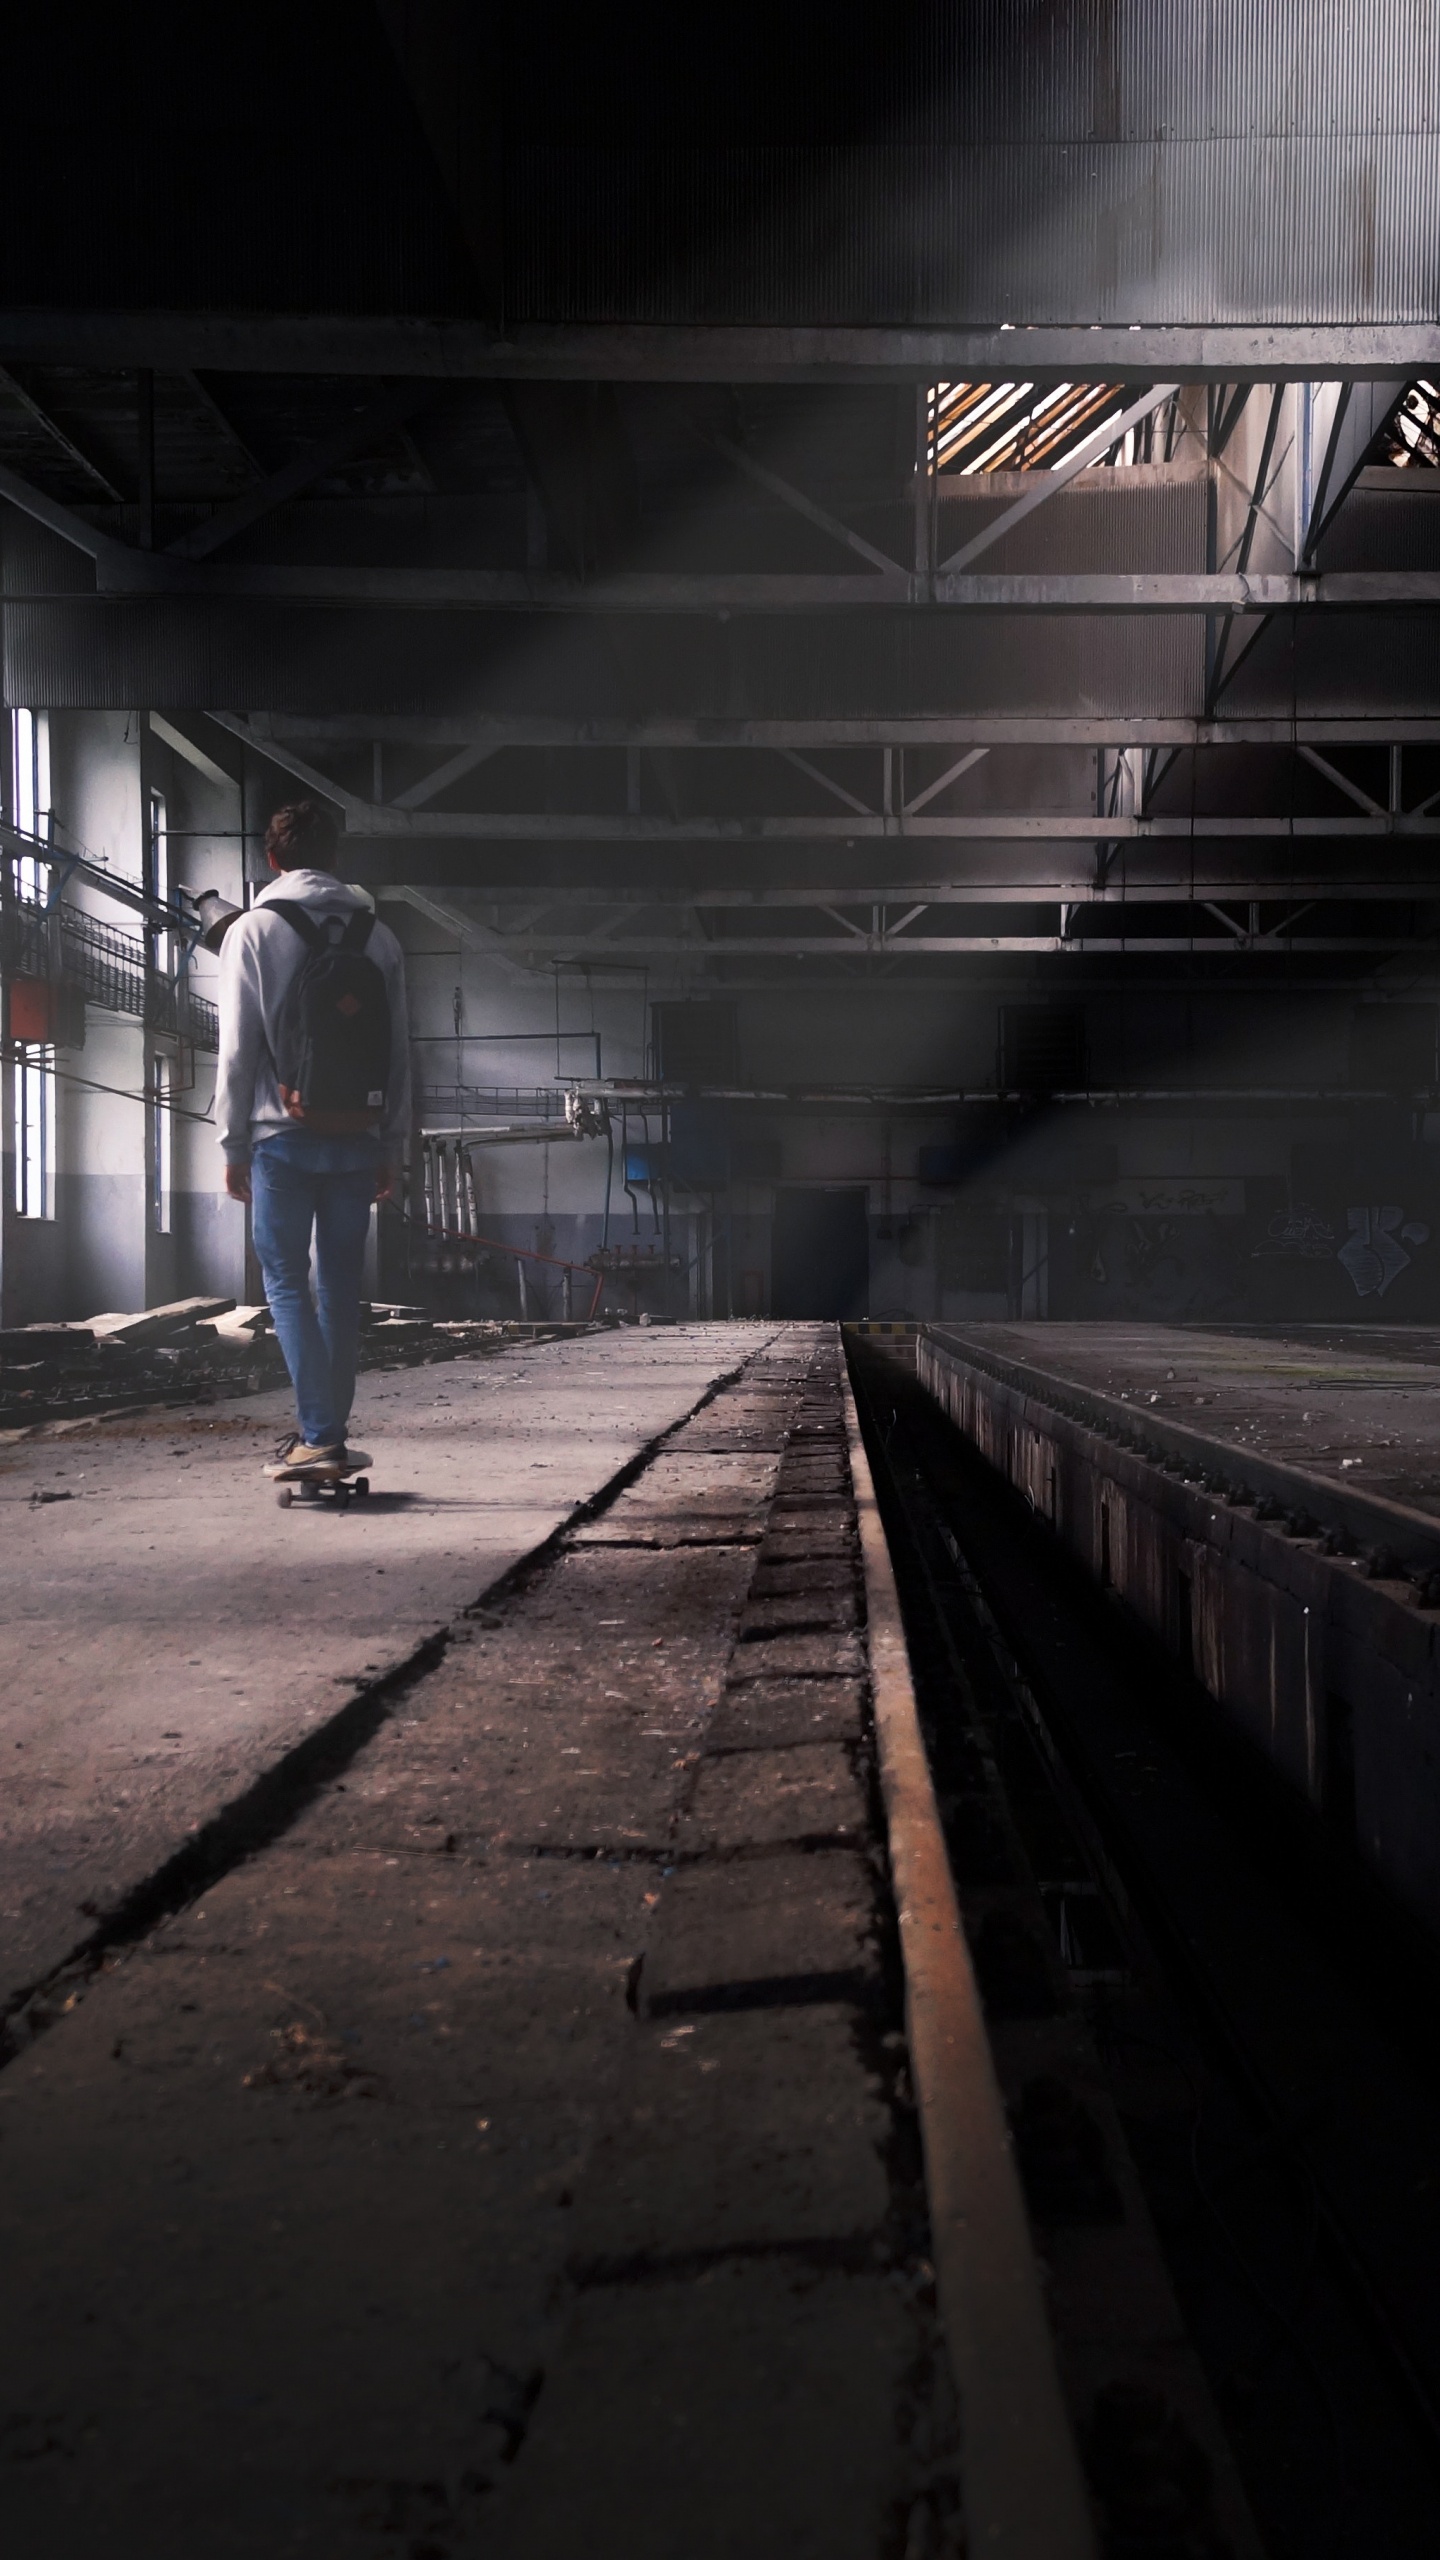 Man in Blue Denim Jeans Walking on Train Station. Wallpaper in 1440x2560 Resolution